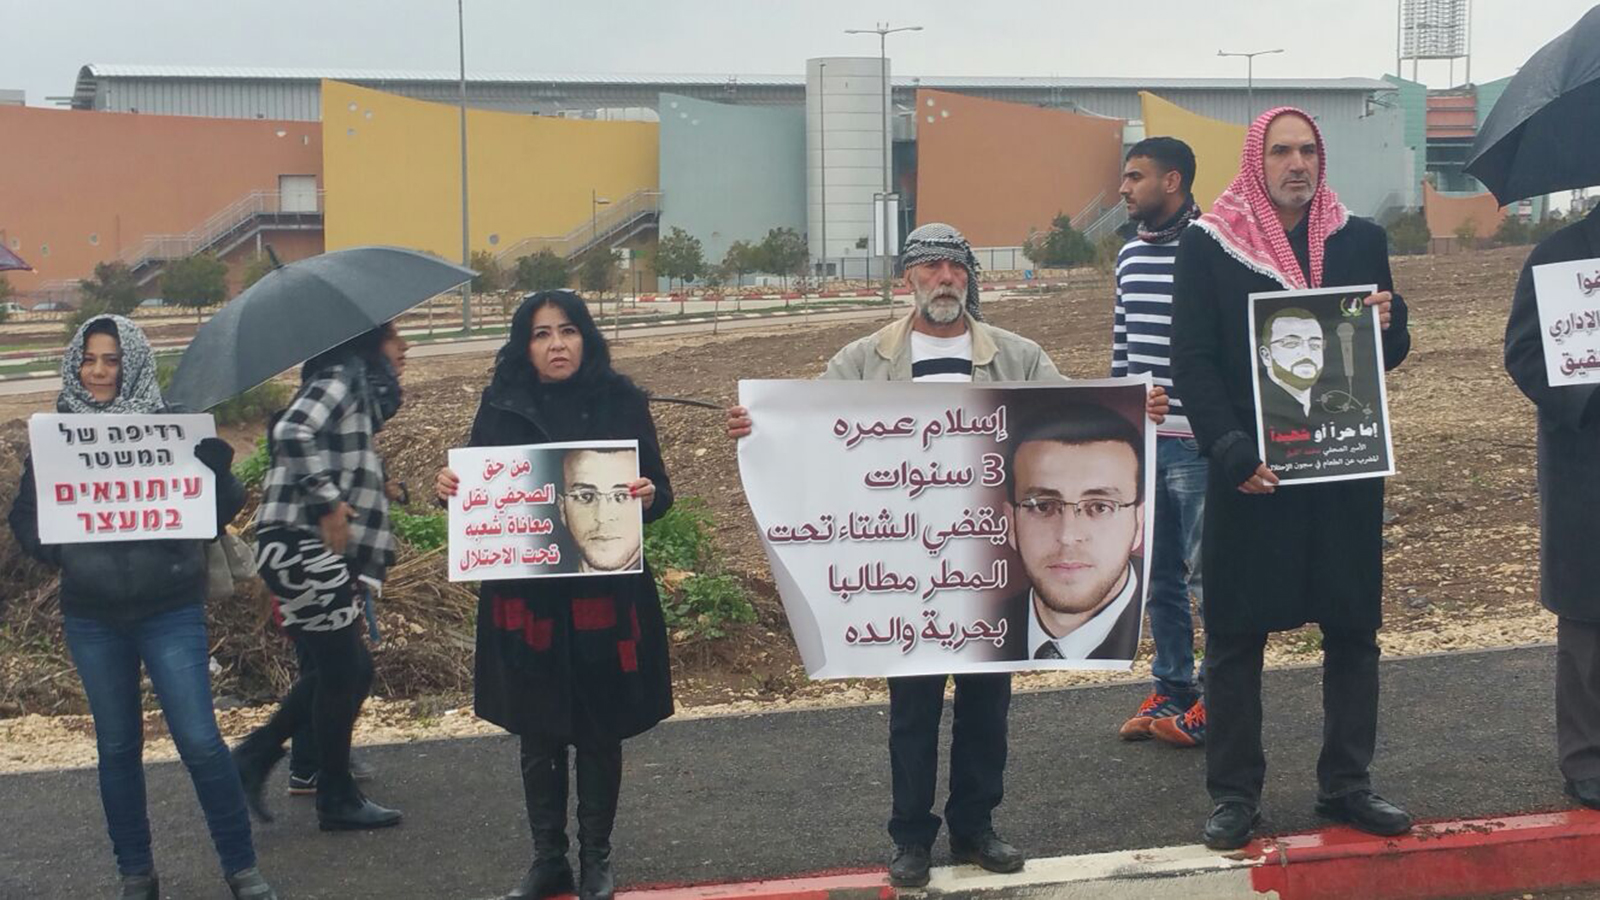 ‪صحفيون يعتصمون أمام مستشفى العفولة حيث يرقد الصحفي القيق‬  (الجزيرة نت)